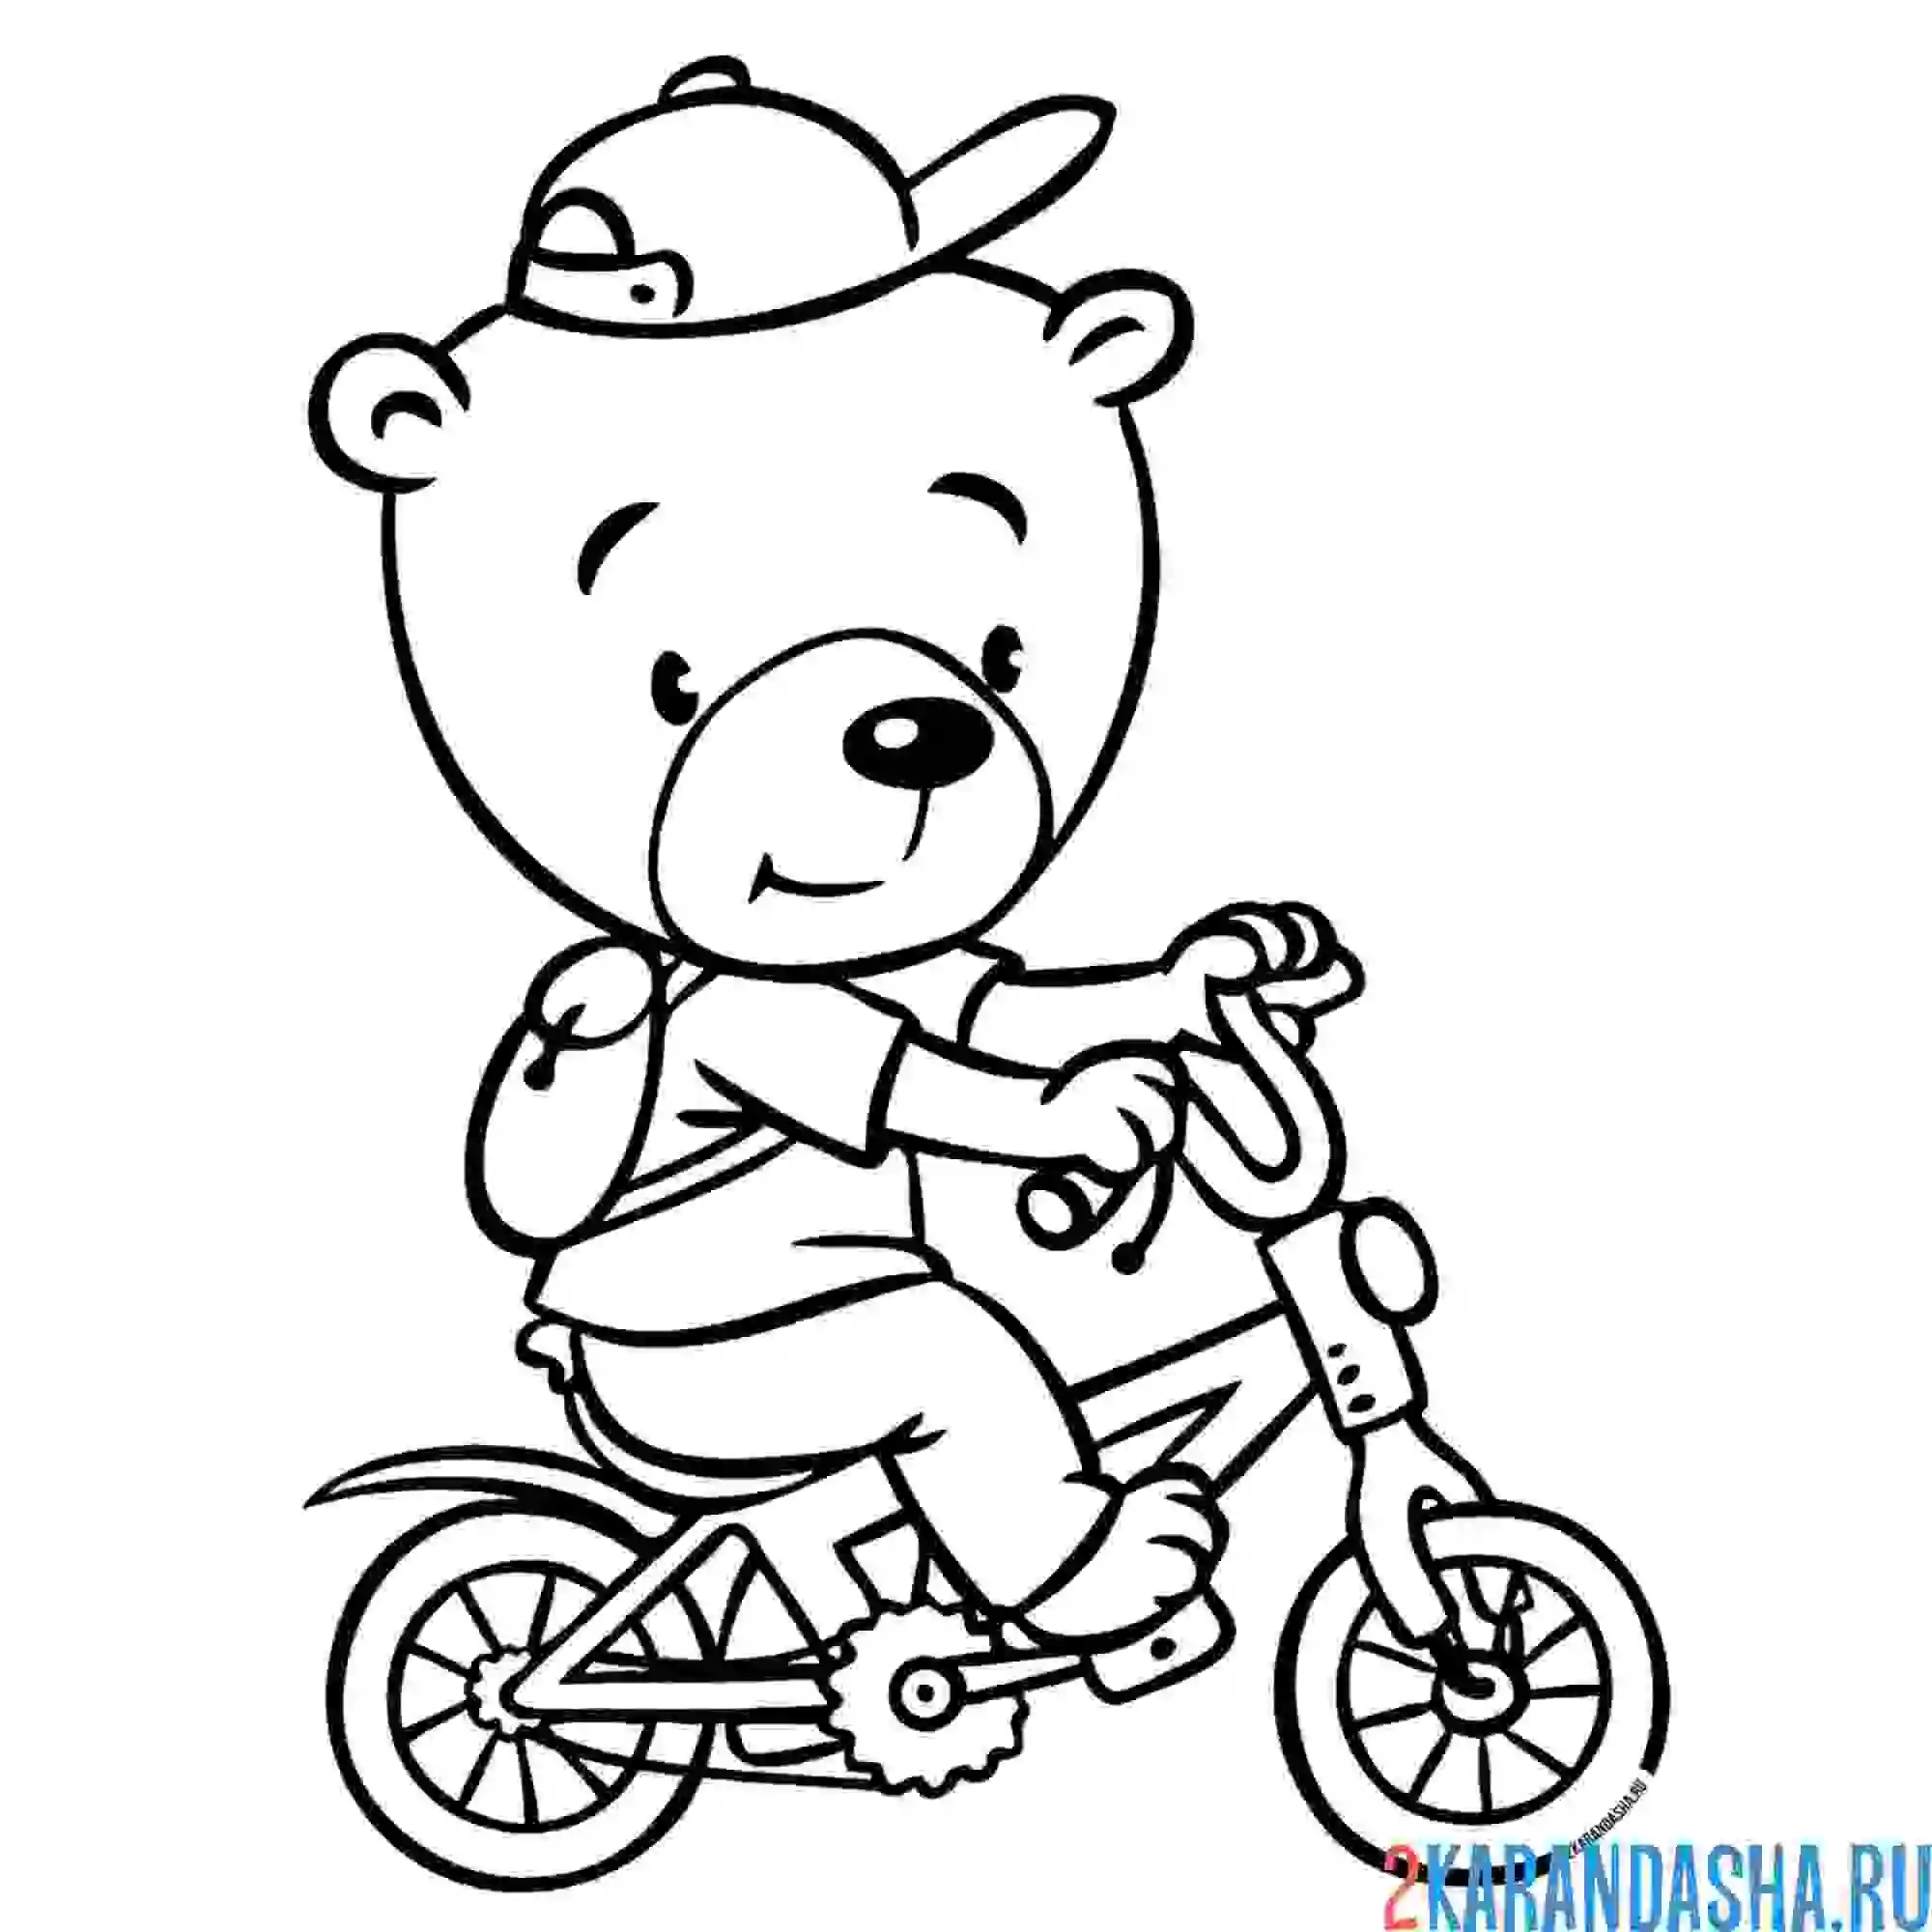 Раскраска медведь на велосипеде